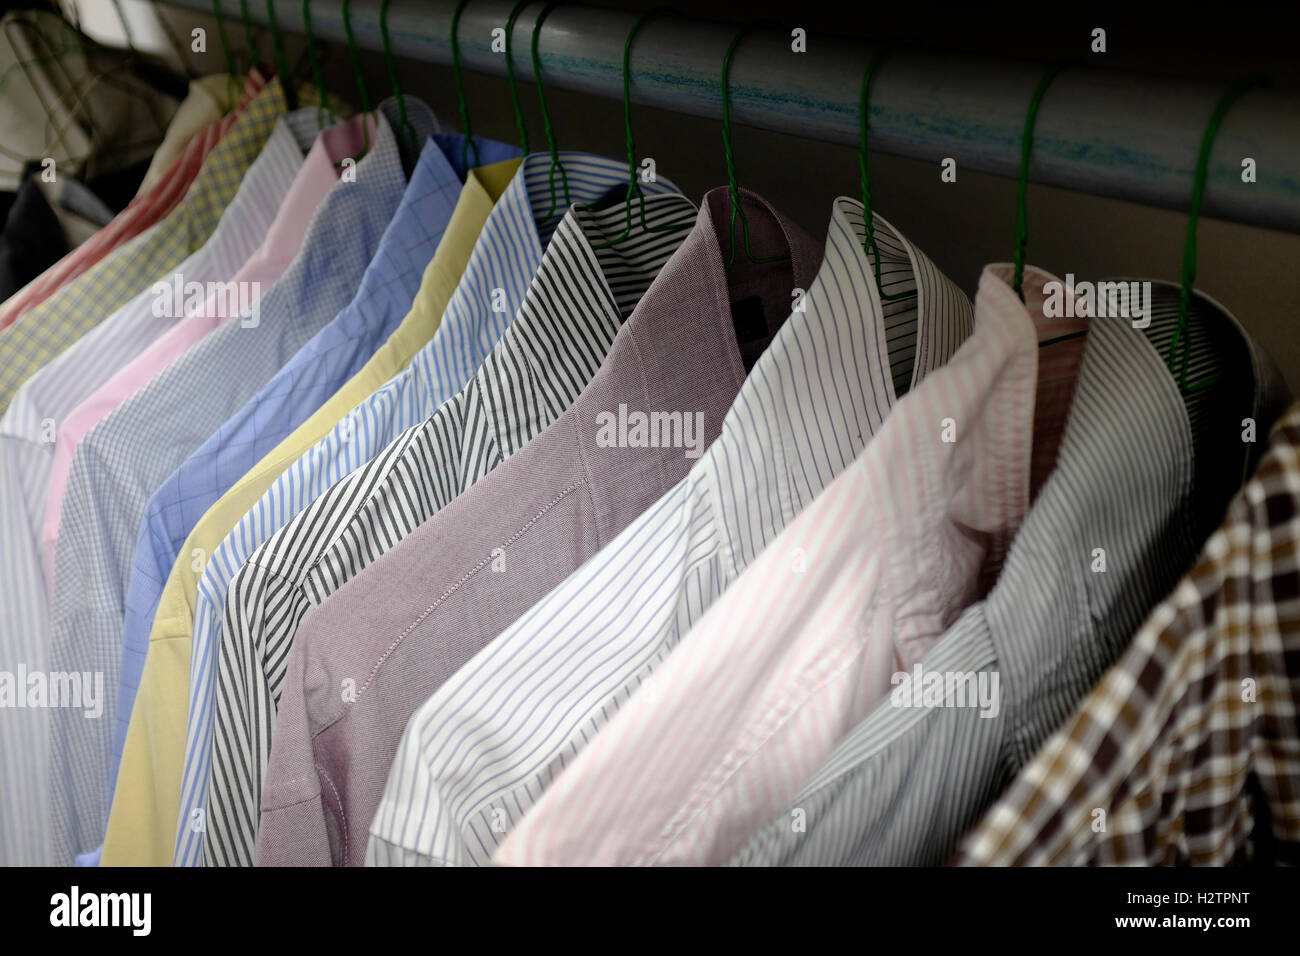 Fila de camisas del vestido colgando de perchas en el armario elección de ropa Foto de stock